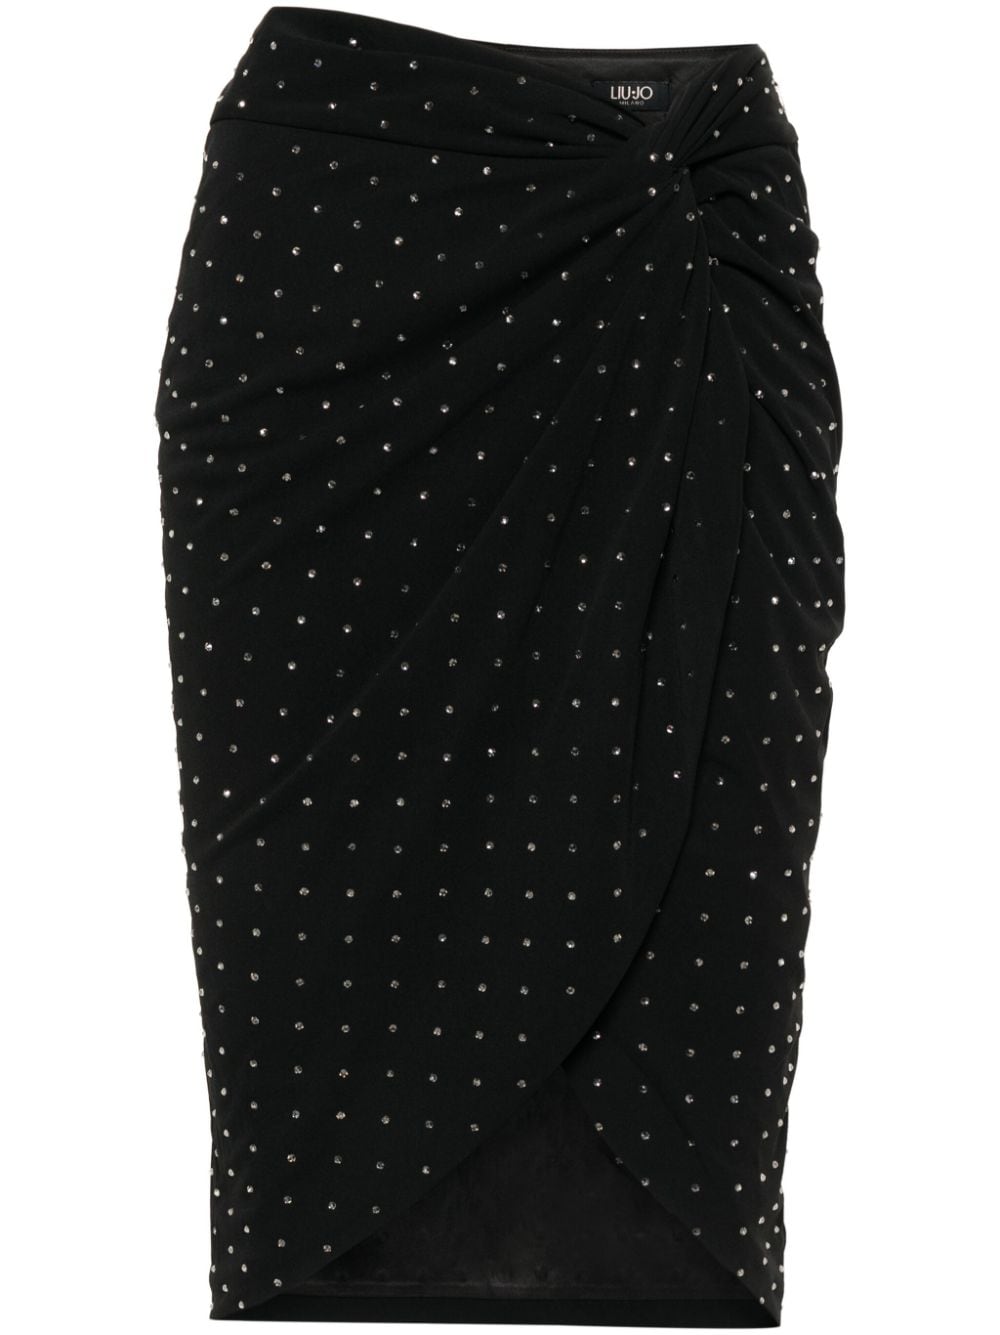 LIU JO crystal-embellished pencil skirt - Black von LIU JO